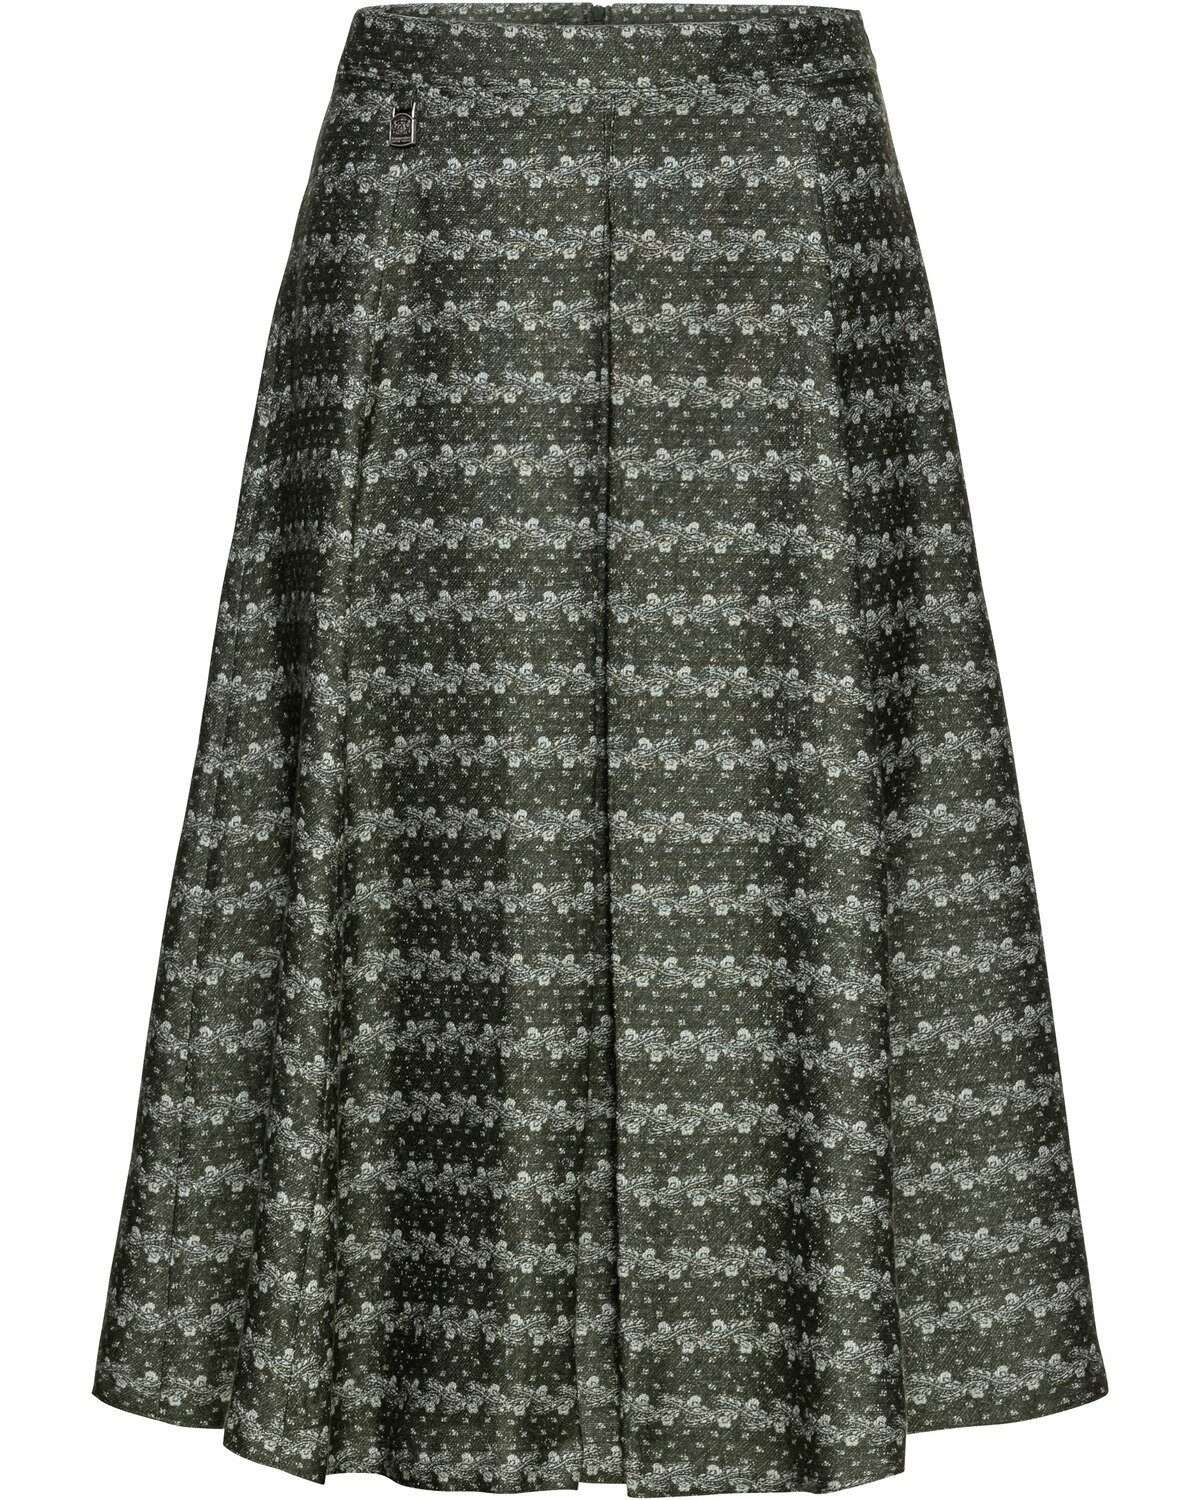 Традиционная юбка жаккардовая юбка Zwiesel